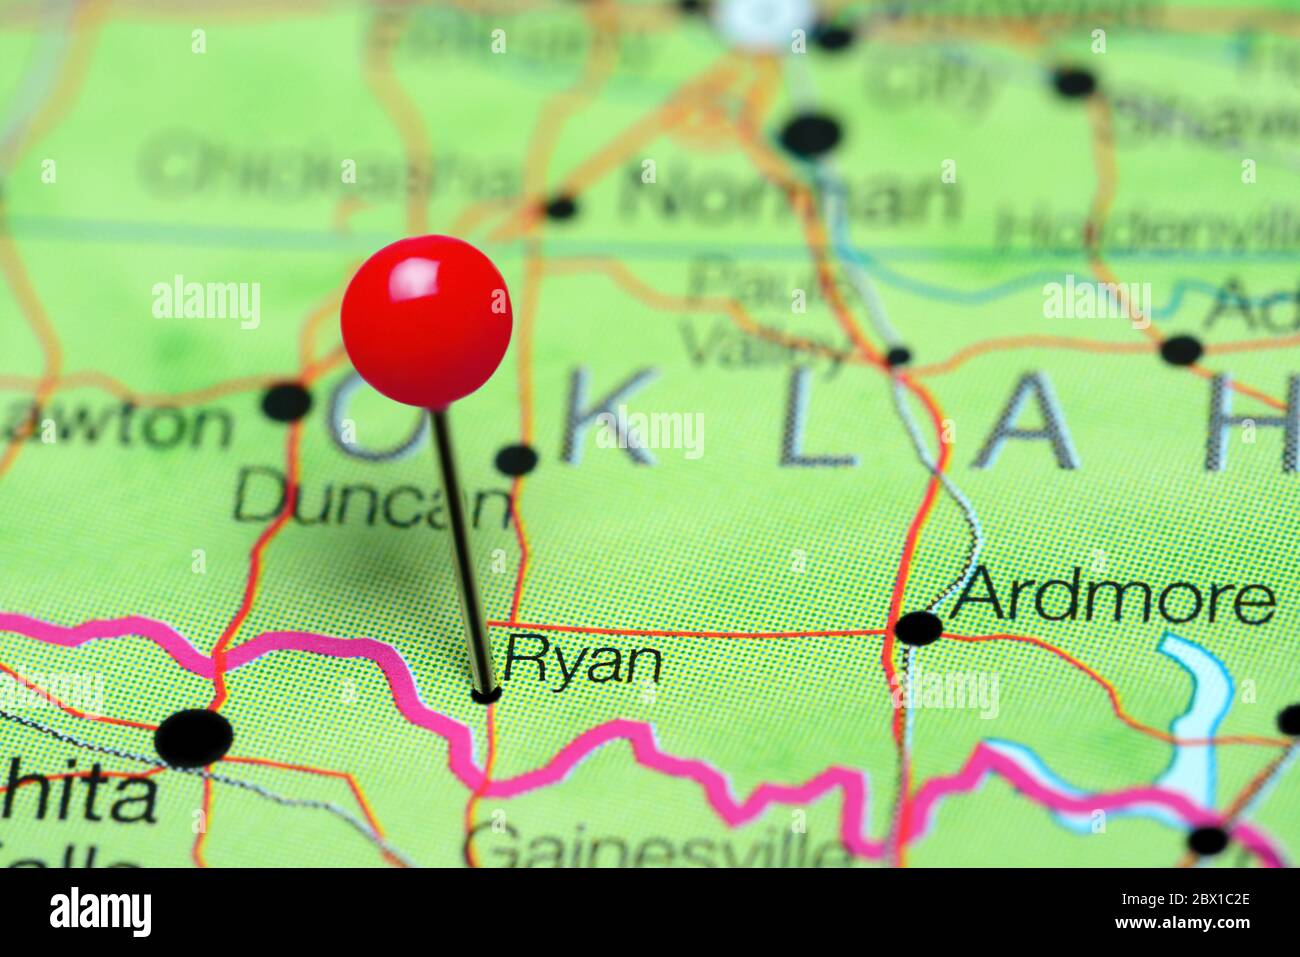 Ryan cubrió un mapa de Oklahoma, EE.UU Foto de stock